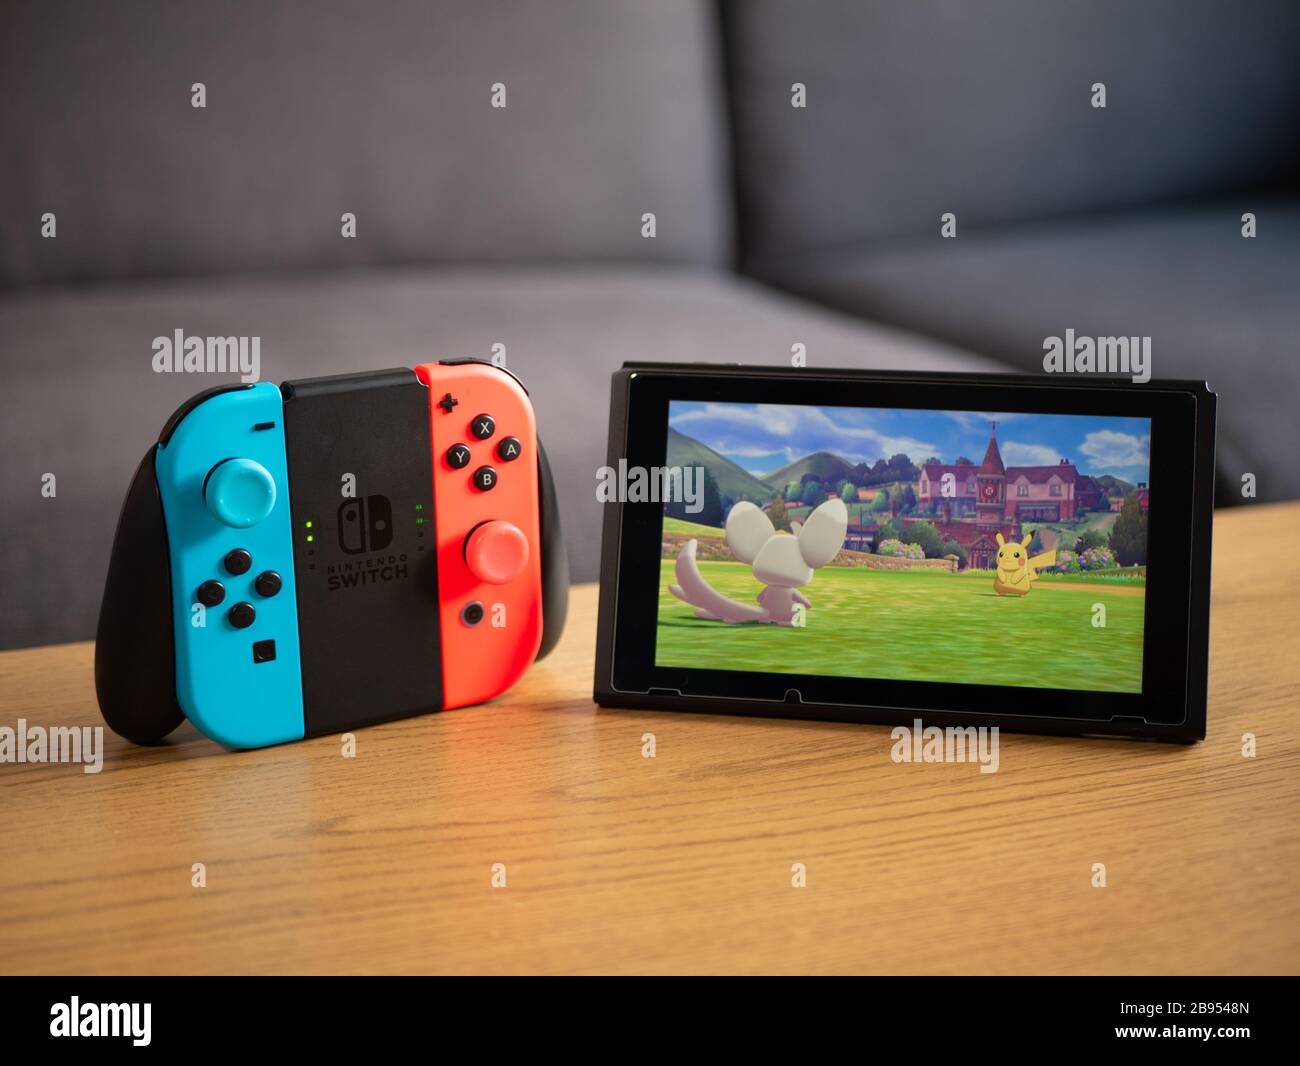 Reino Unido, de marzo: Nintendo switch pikachu batalla - pokemon espada y escudo juego Fotografía de stock - Alamy